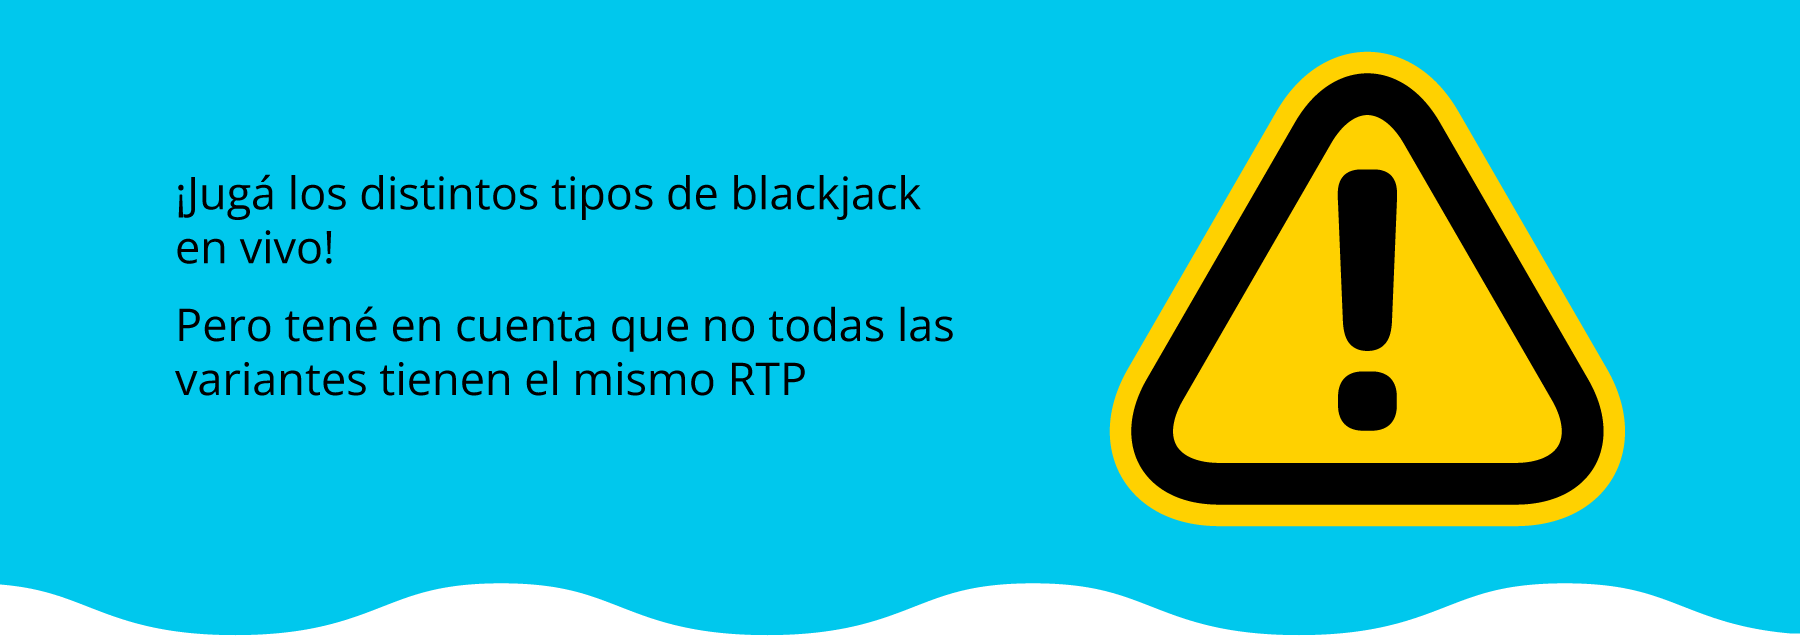 RTP en blackjack en vivo